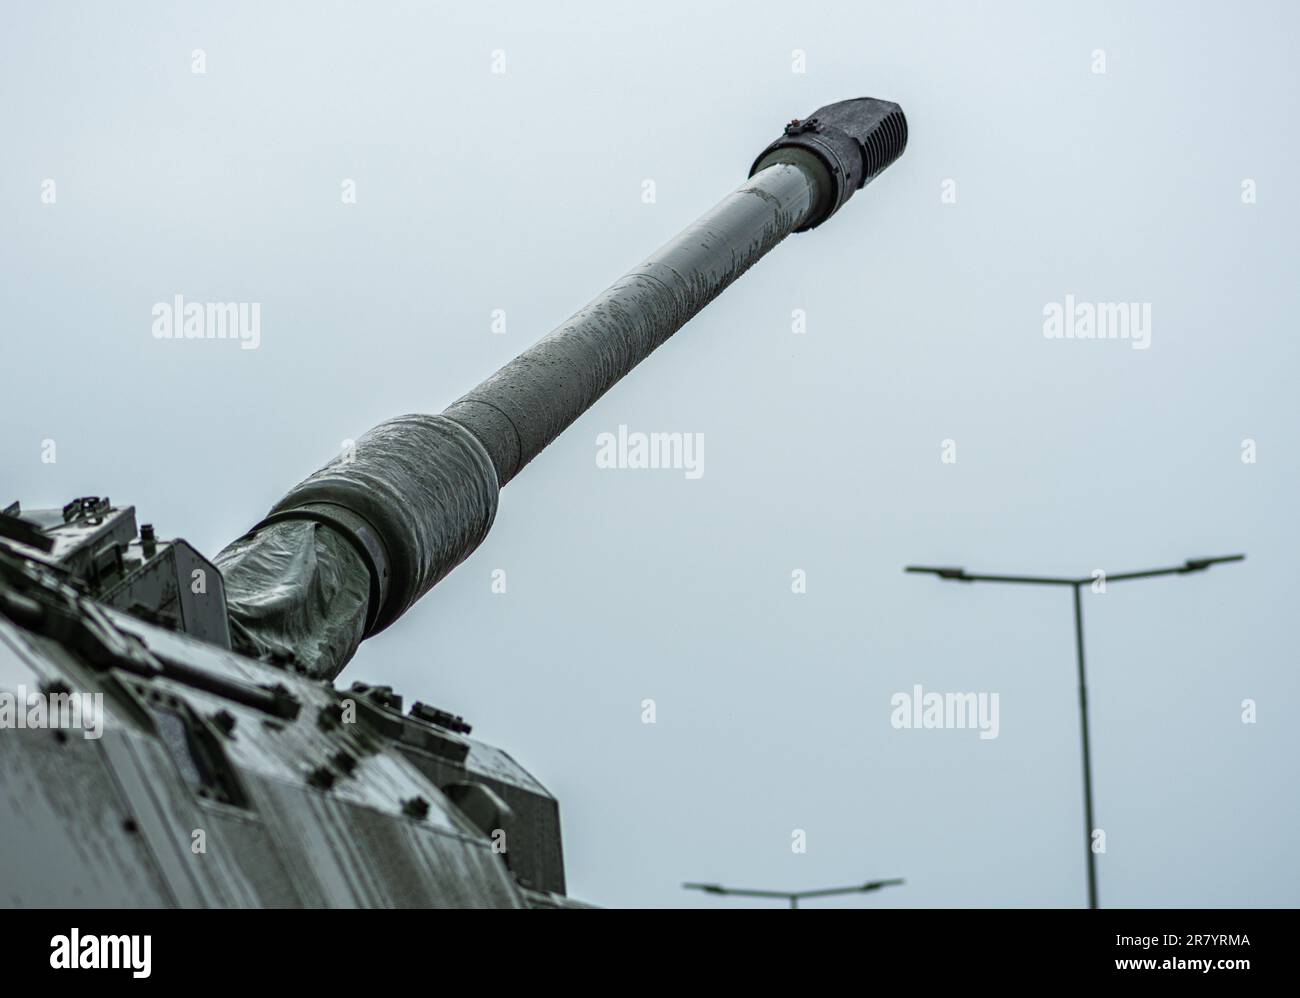 Obusier blindé de char Panzerhaubitze 2000 ou PzH 2000 avec le canon ou le canon prêt à tirer dirigé vers le ciel sous la pluie pendant l'attac ukrainien Banque D'Images